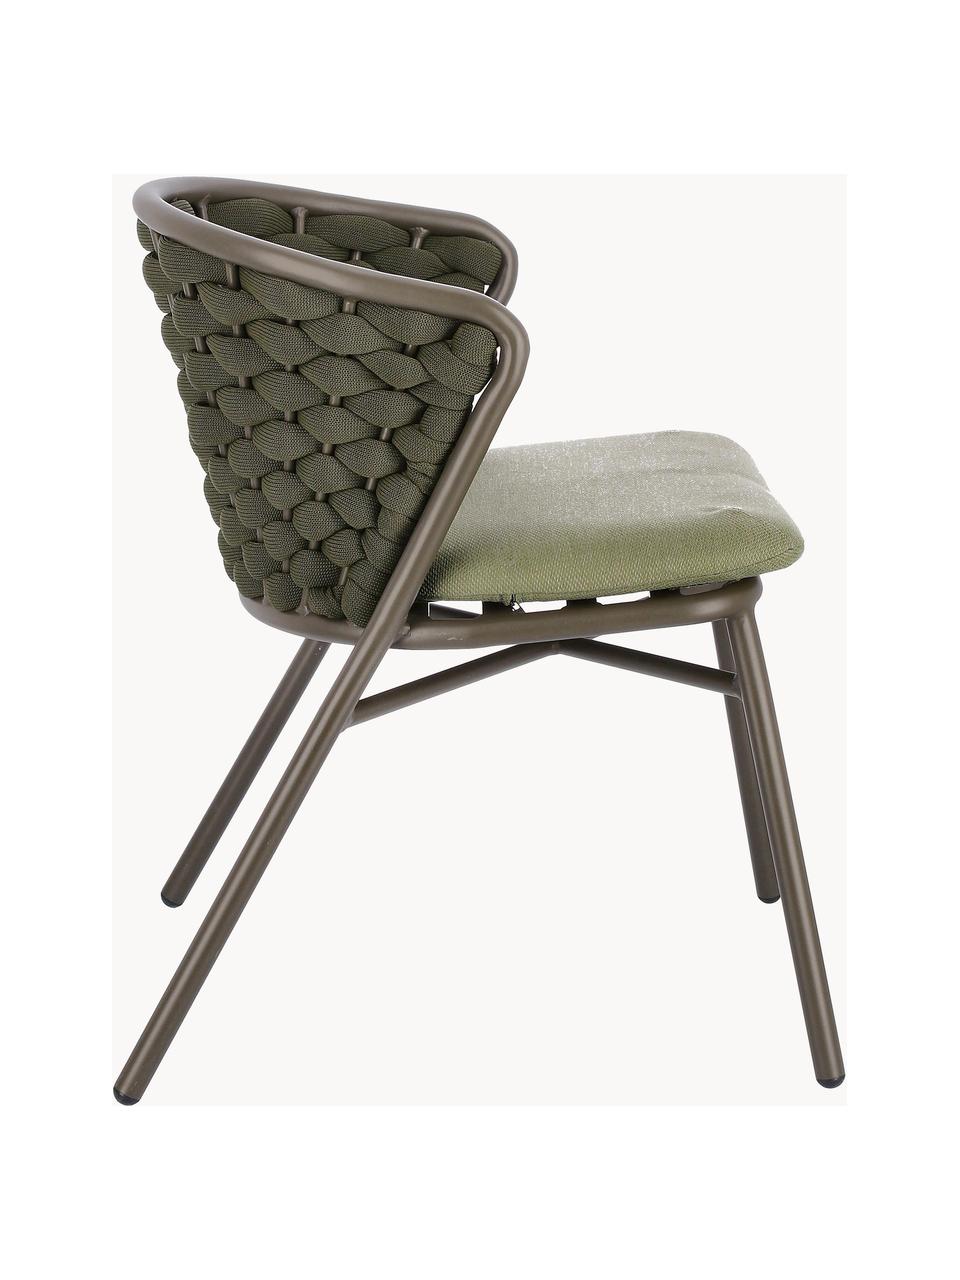 Krzesło ogrodowe Harlow, Tapicerka: 100% polipropylen, Stelaż: aluminium malowane proszk, Oliwkowozielona tkanina, greige, S 62 x G 58 cm